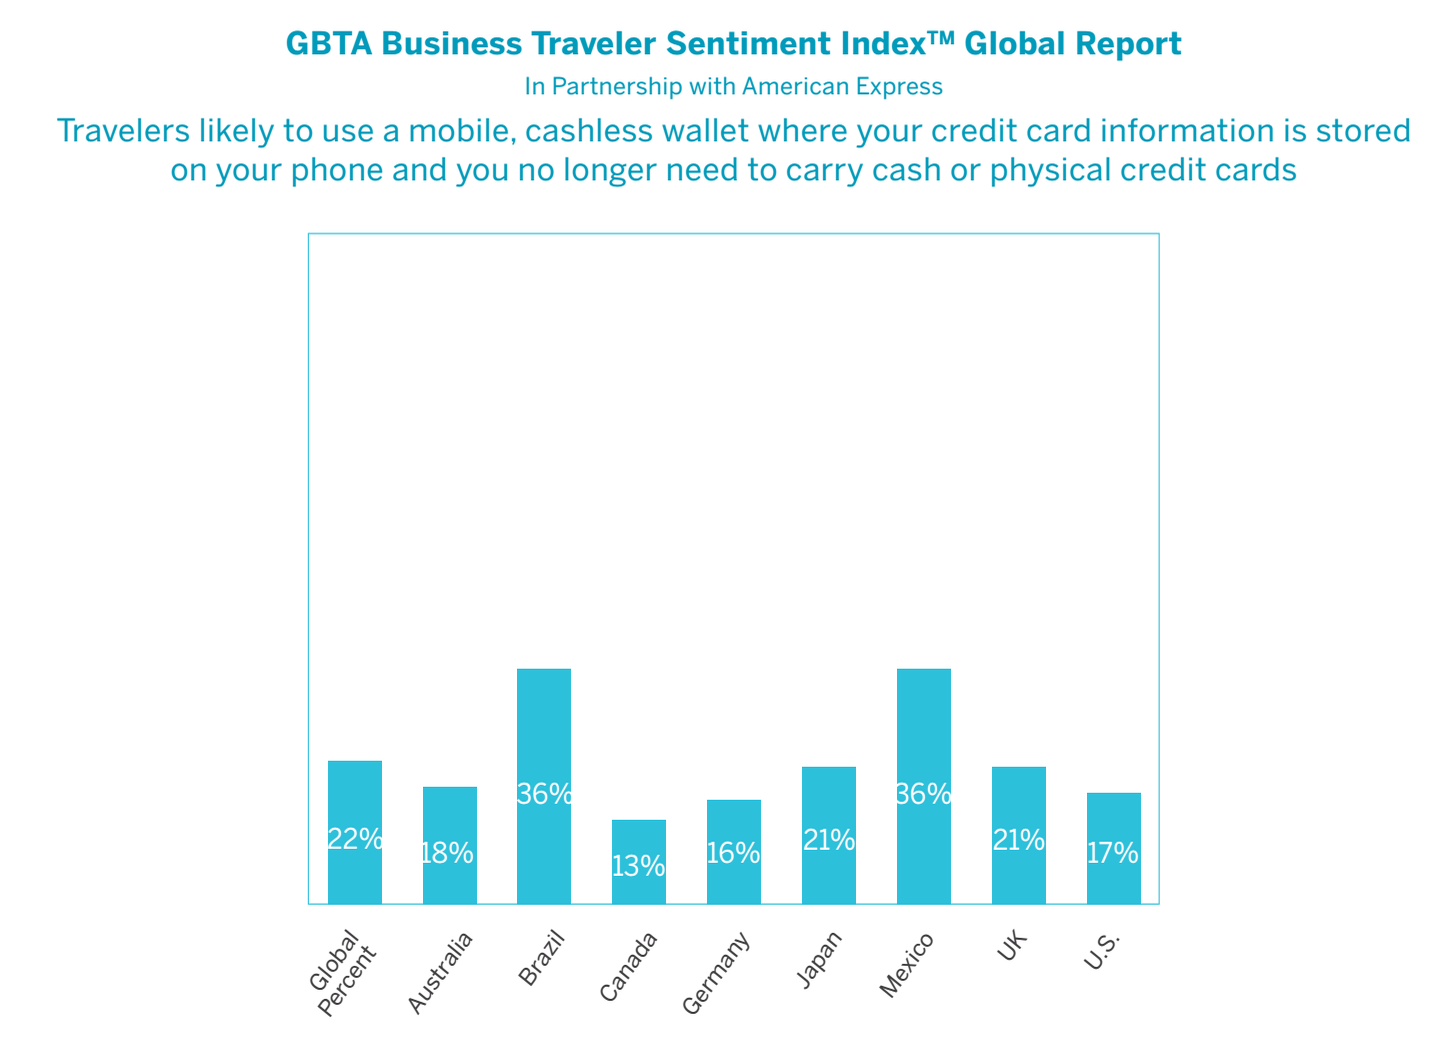 GBTA chart mobile wallets